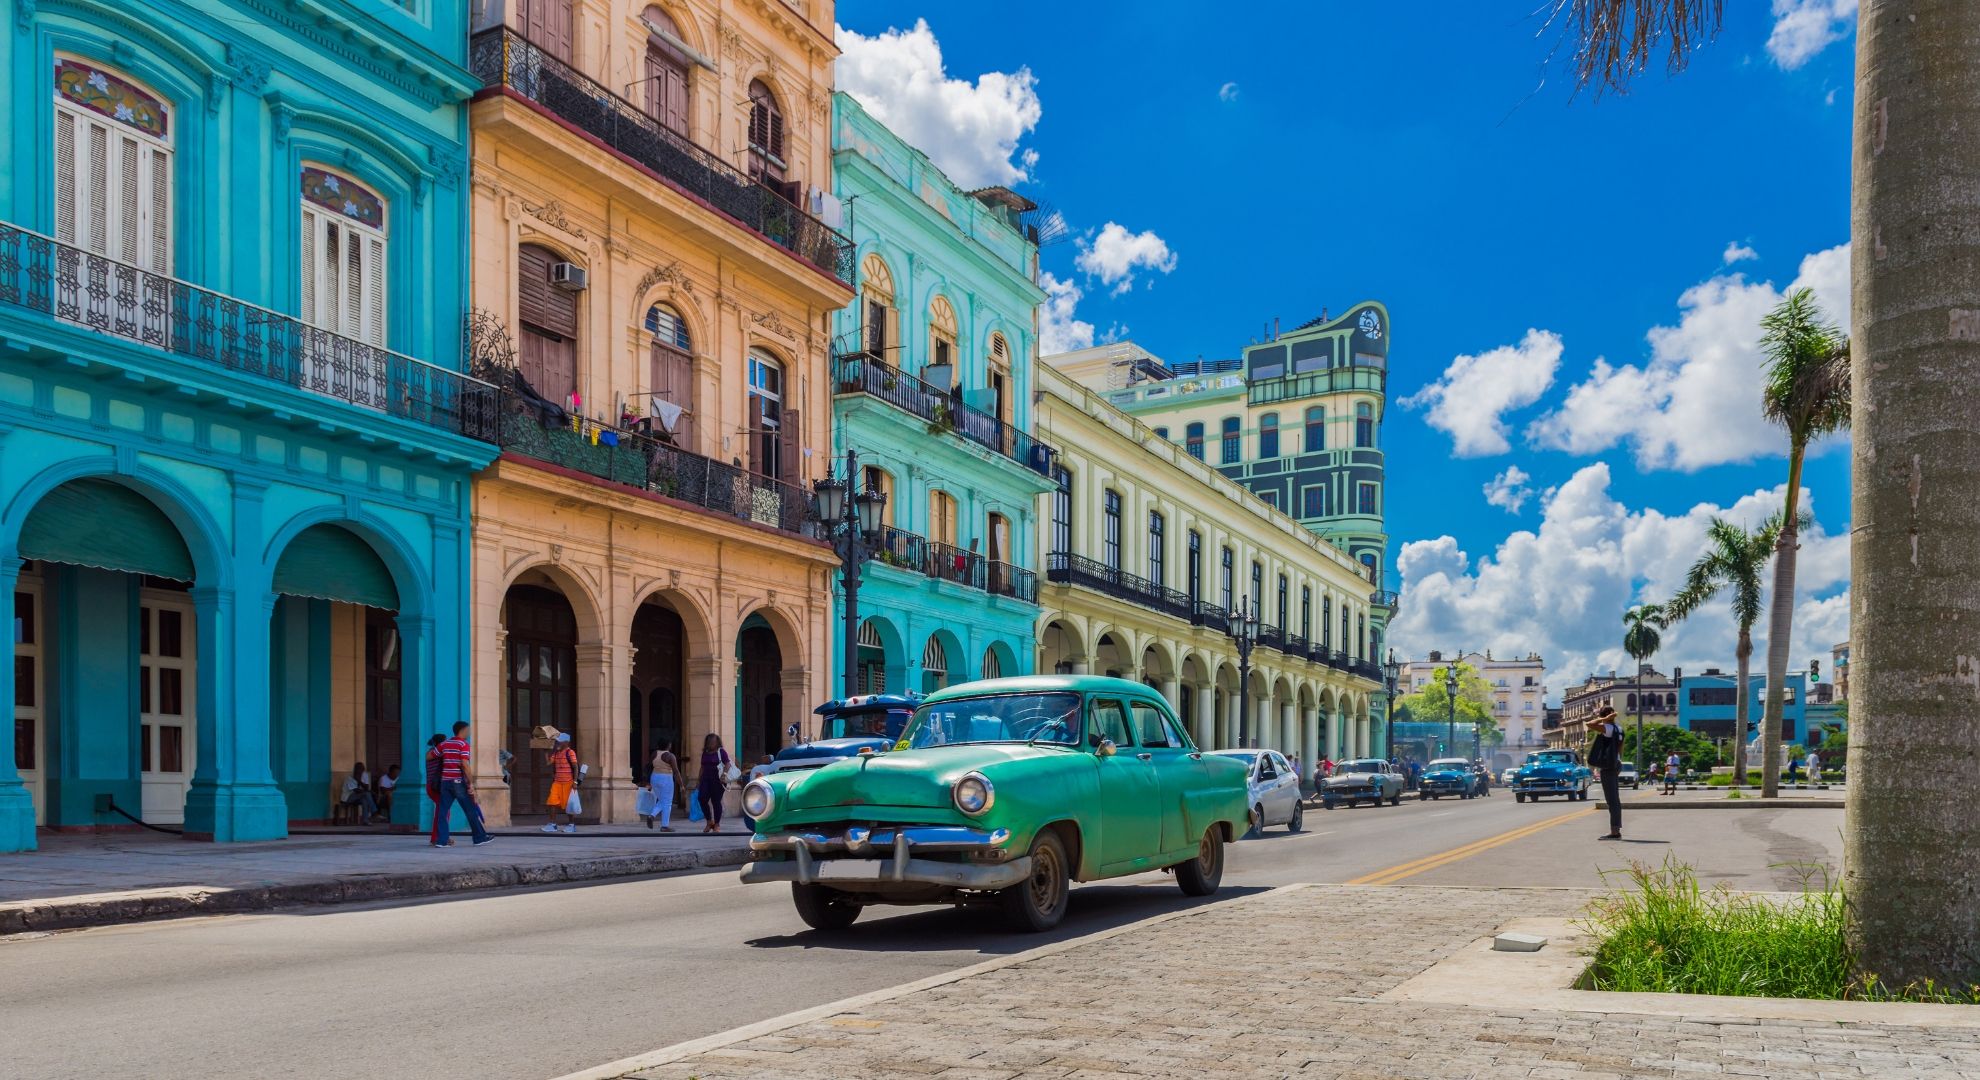 Tropska Kuba<br />
Odhod: 23. 11. 2023, 11 dni<br />
ZAGOTOVLJEN ODHOD